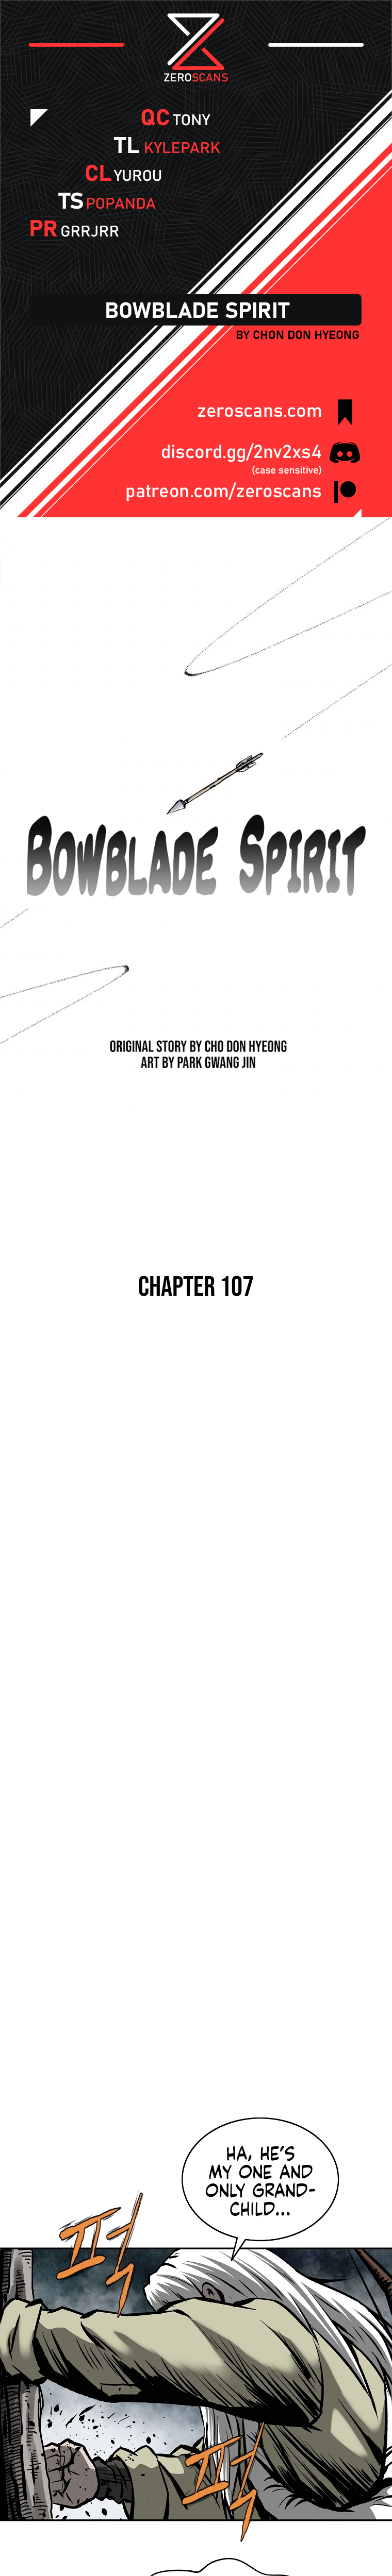 Bowblade Spirit - Chapter 11057 - Image 1